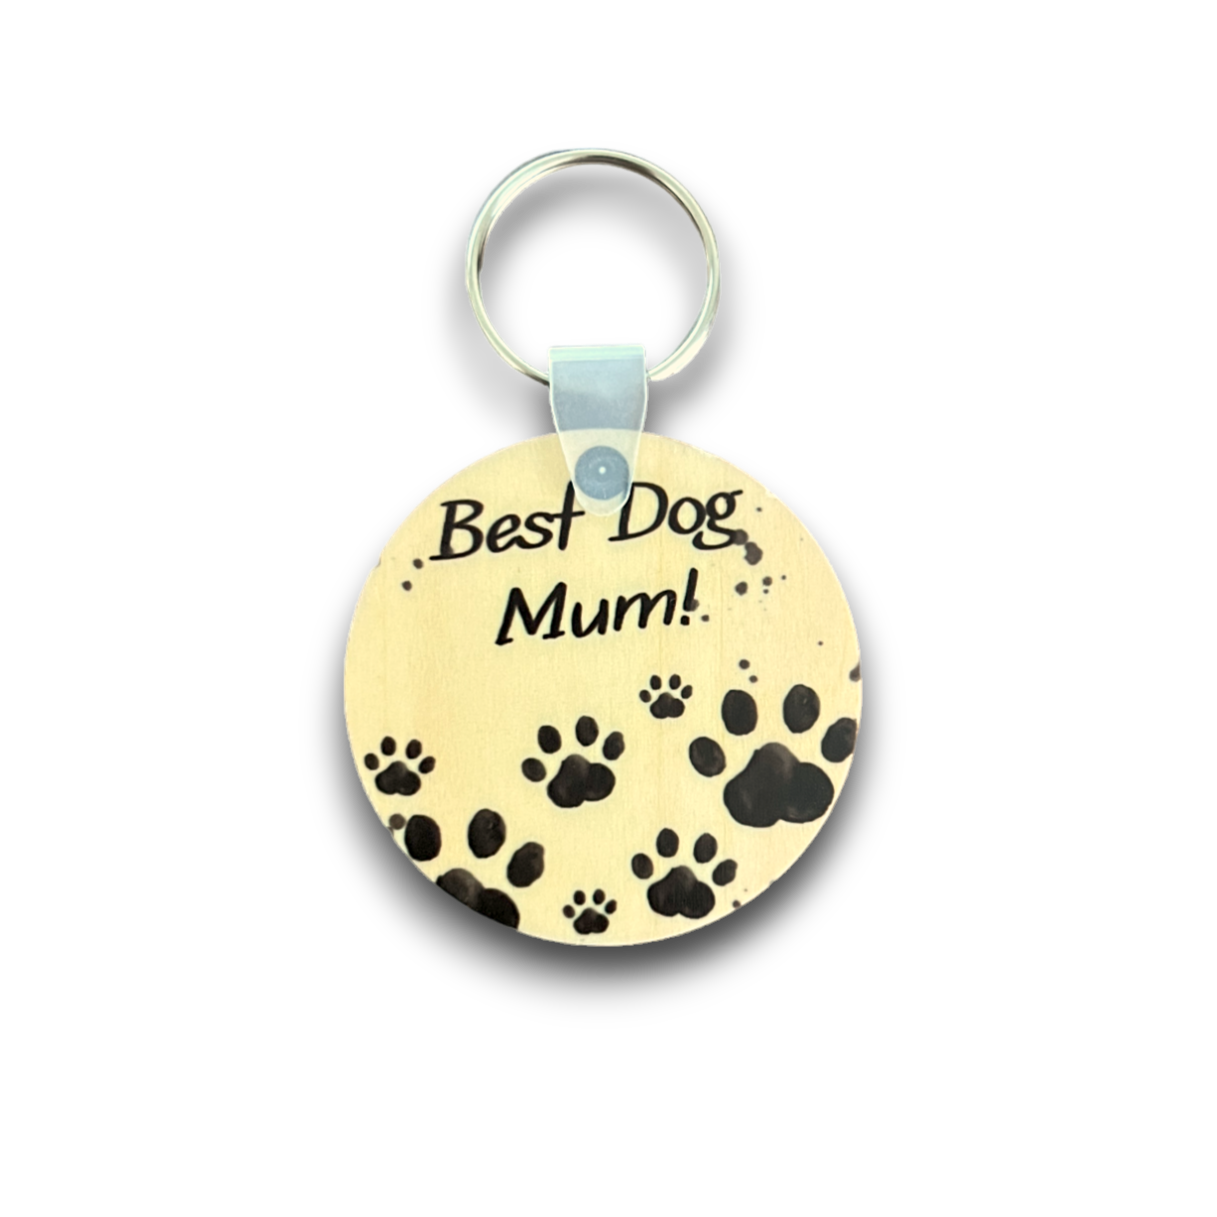 Best Dog Mum keychain